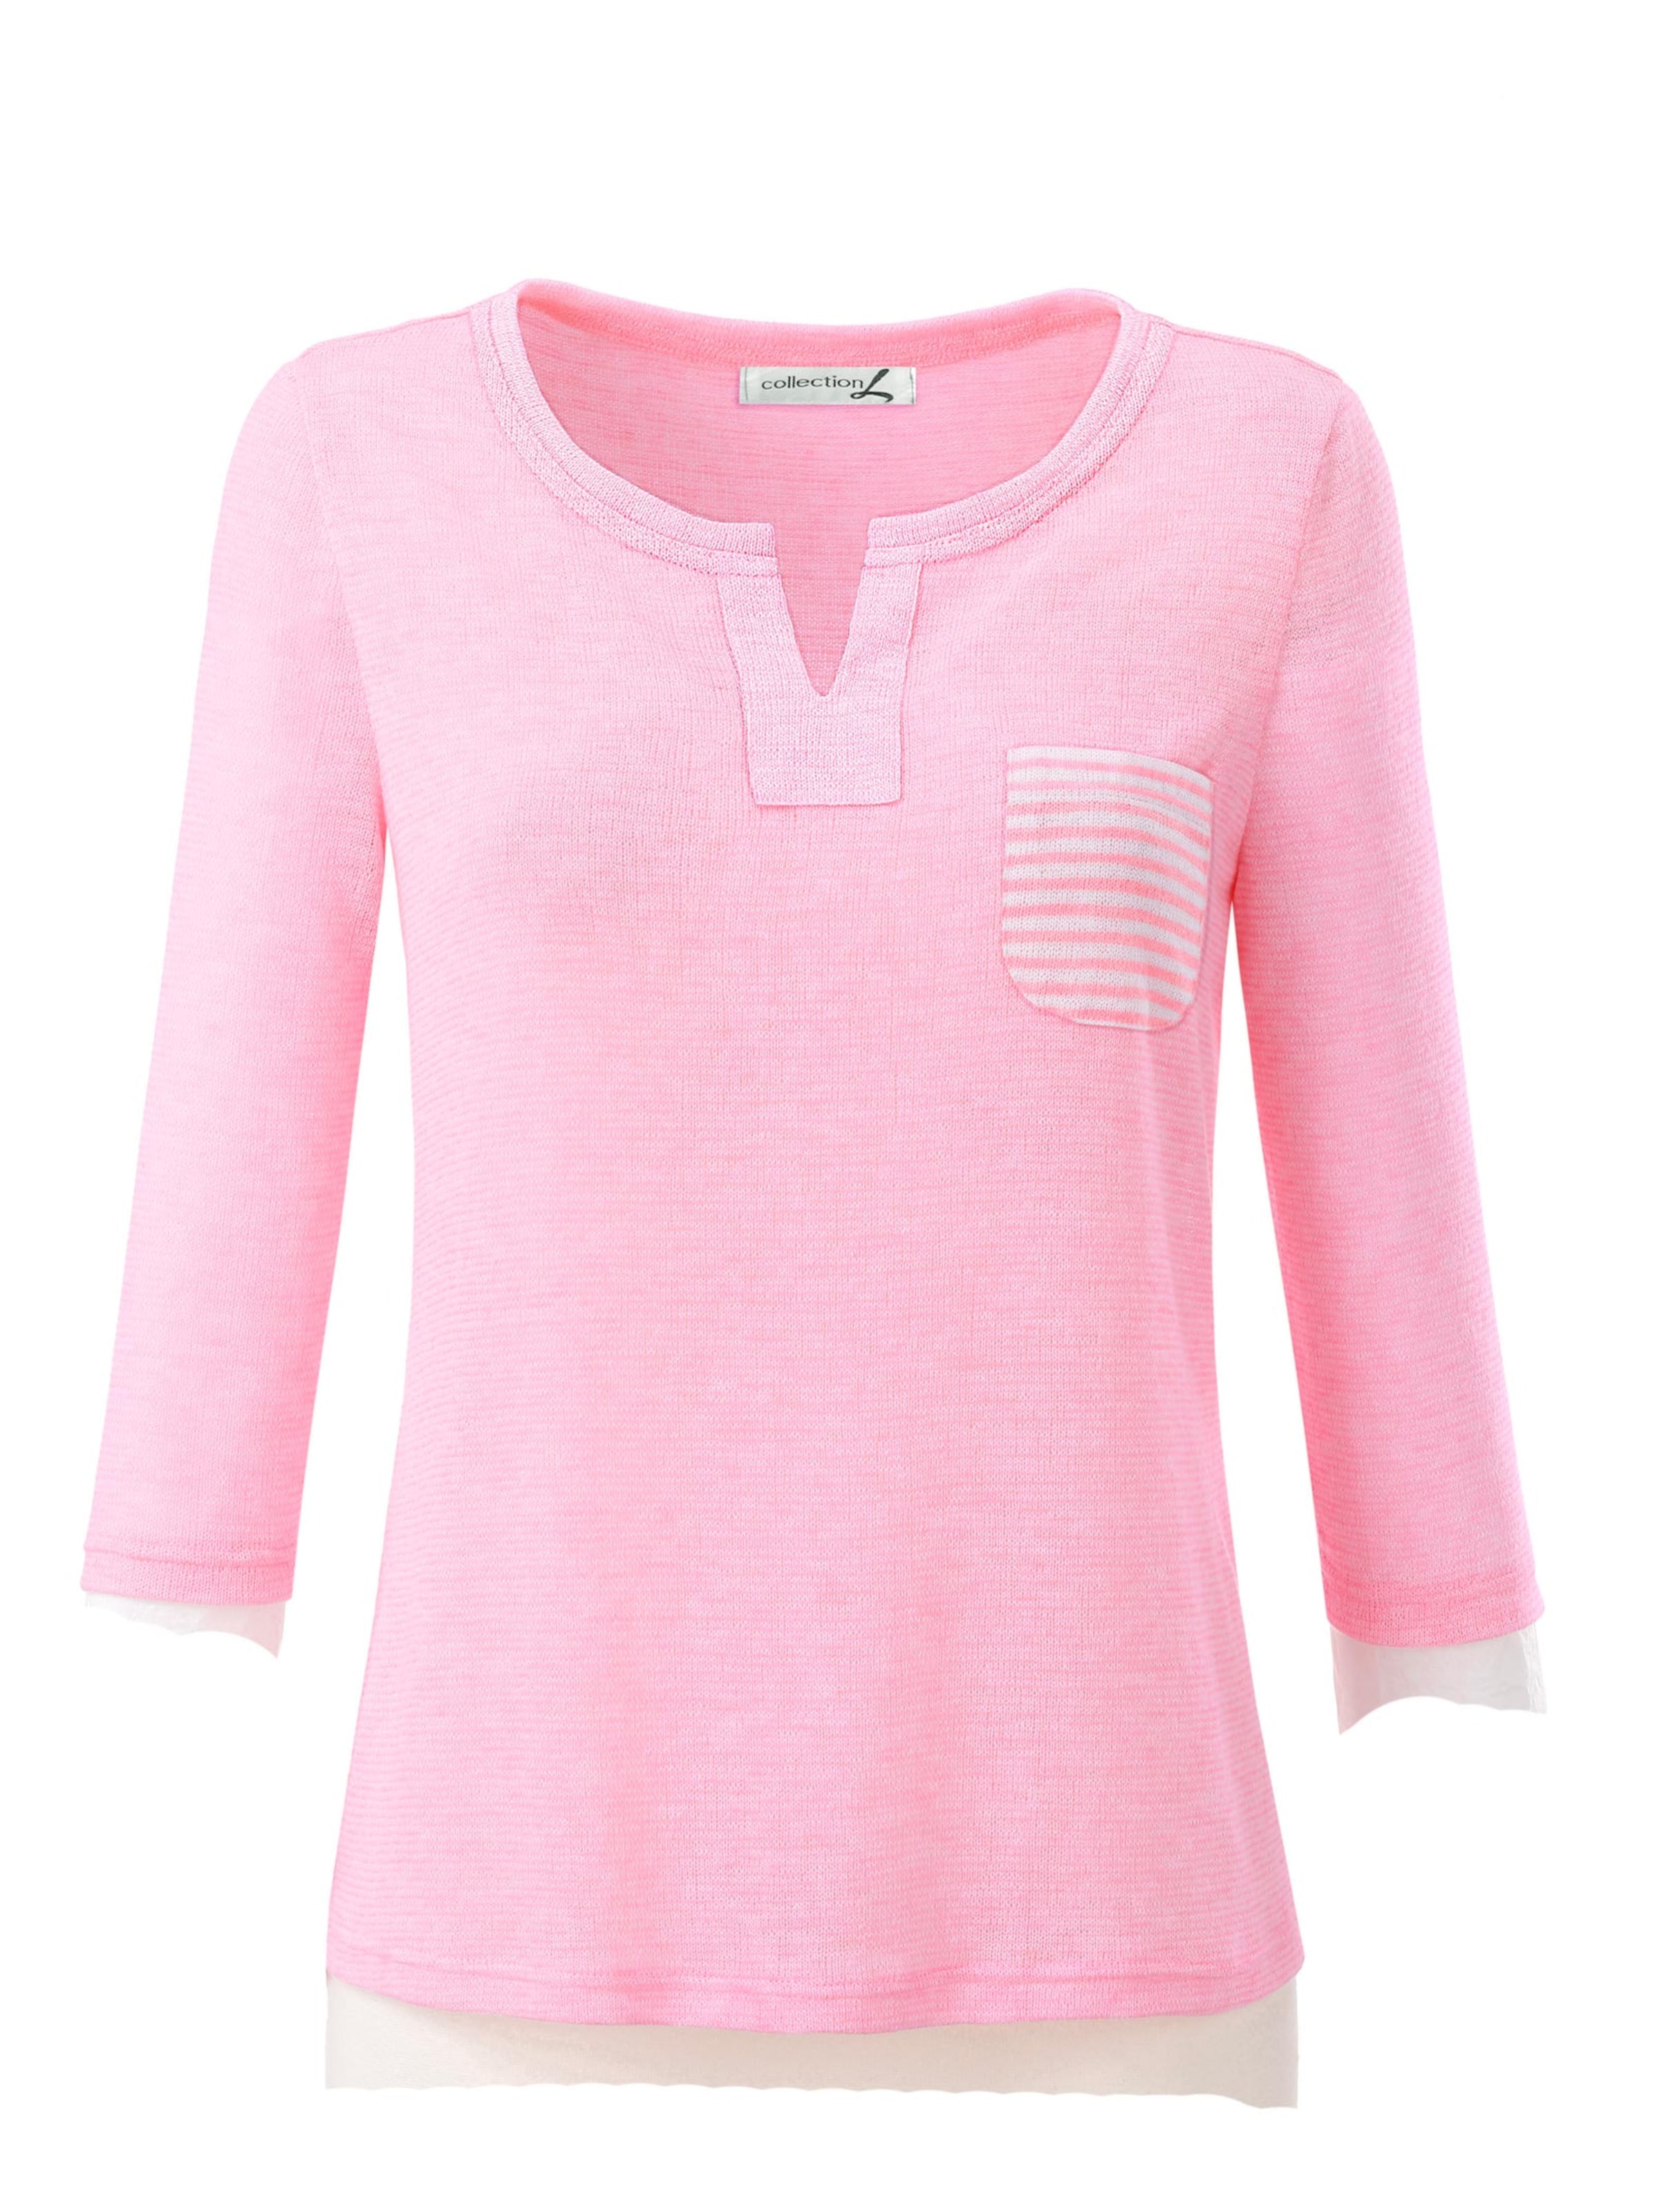 Damenmode Shirts 3/4-Arm-Shirt in rosé 